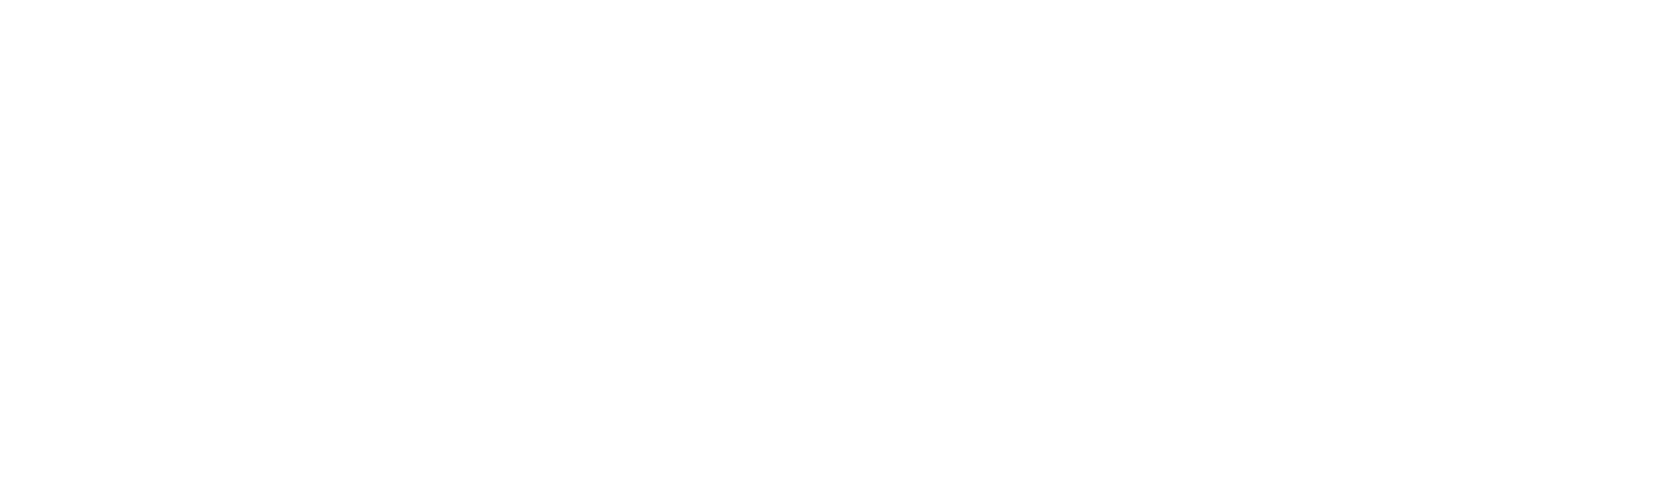 Иннопром — партнёр Театра Veneziano